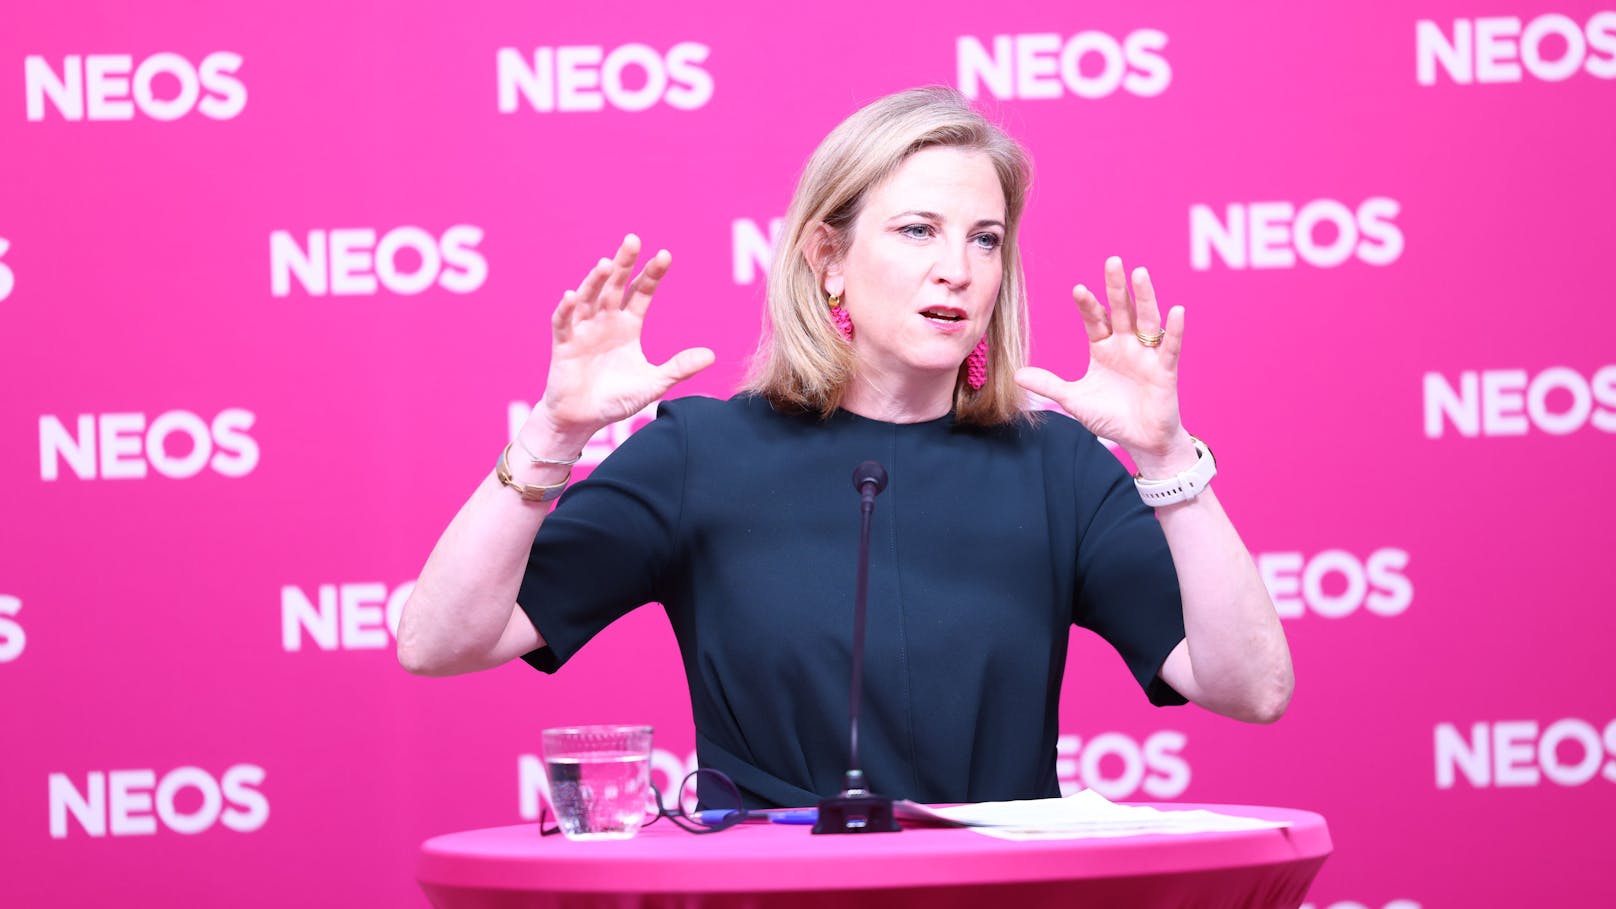 "Gut vorbereitet": NEOS will mit Reformgruppen regieren